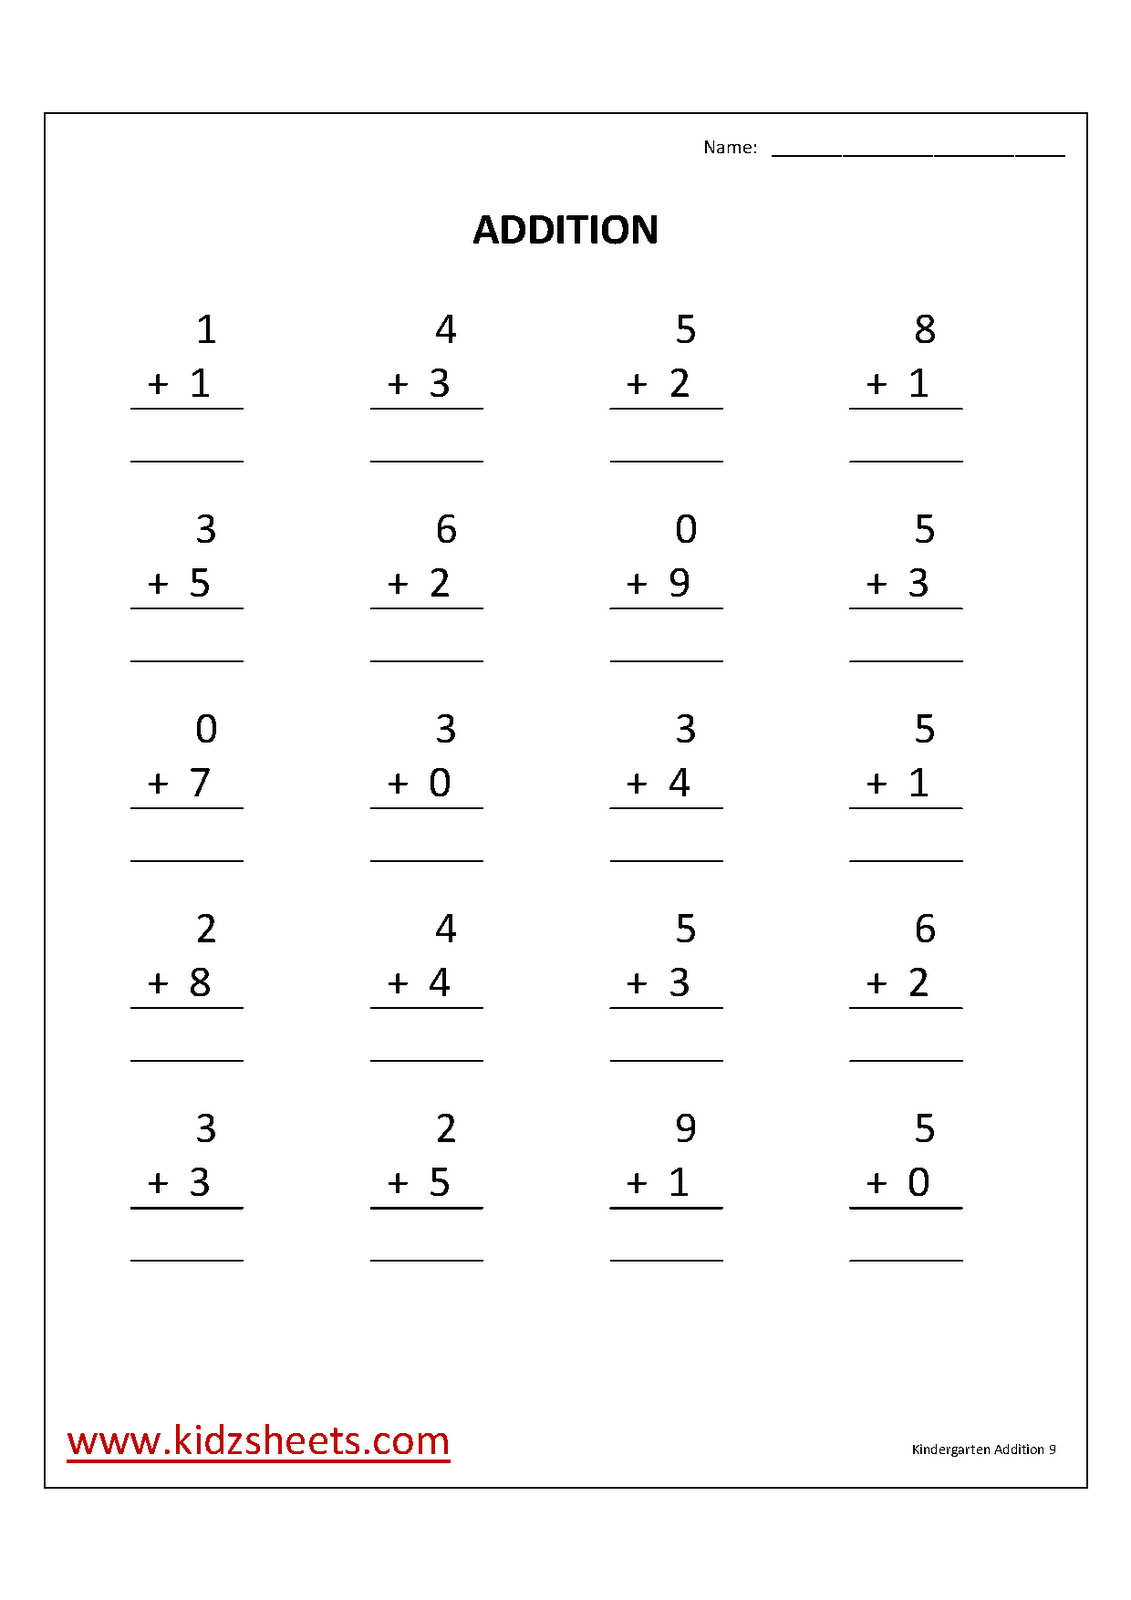 Kindergarten Addition Math Worksheet